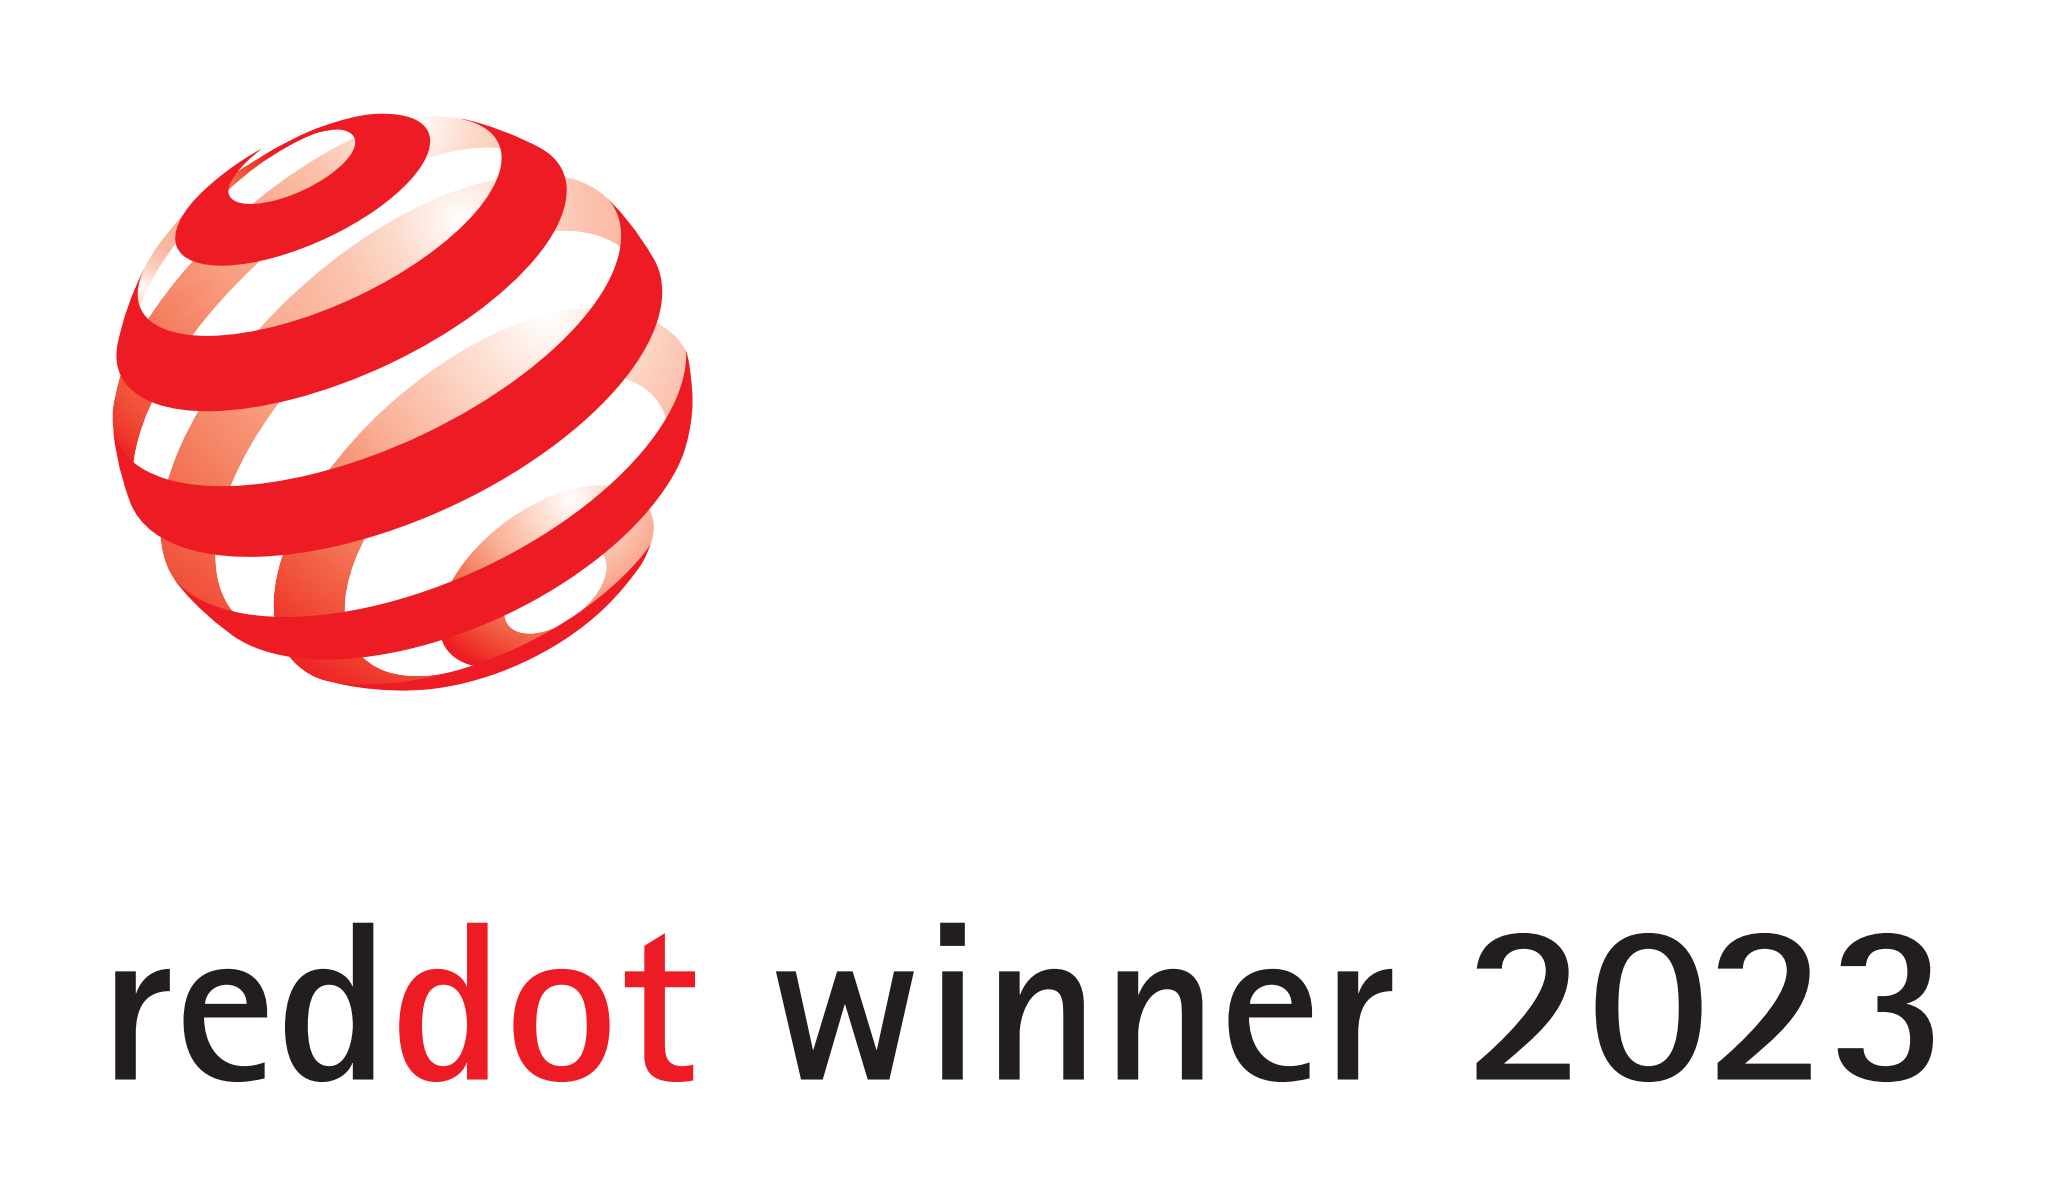 Reddot Winner 2023 award